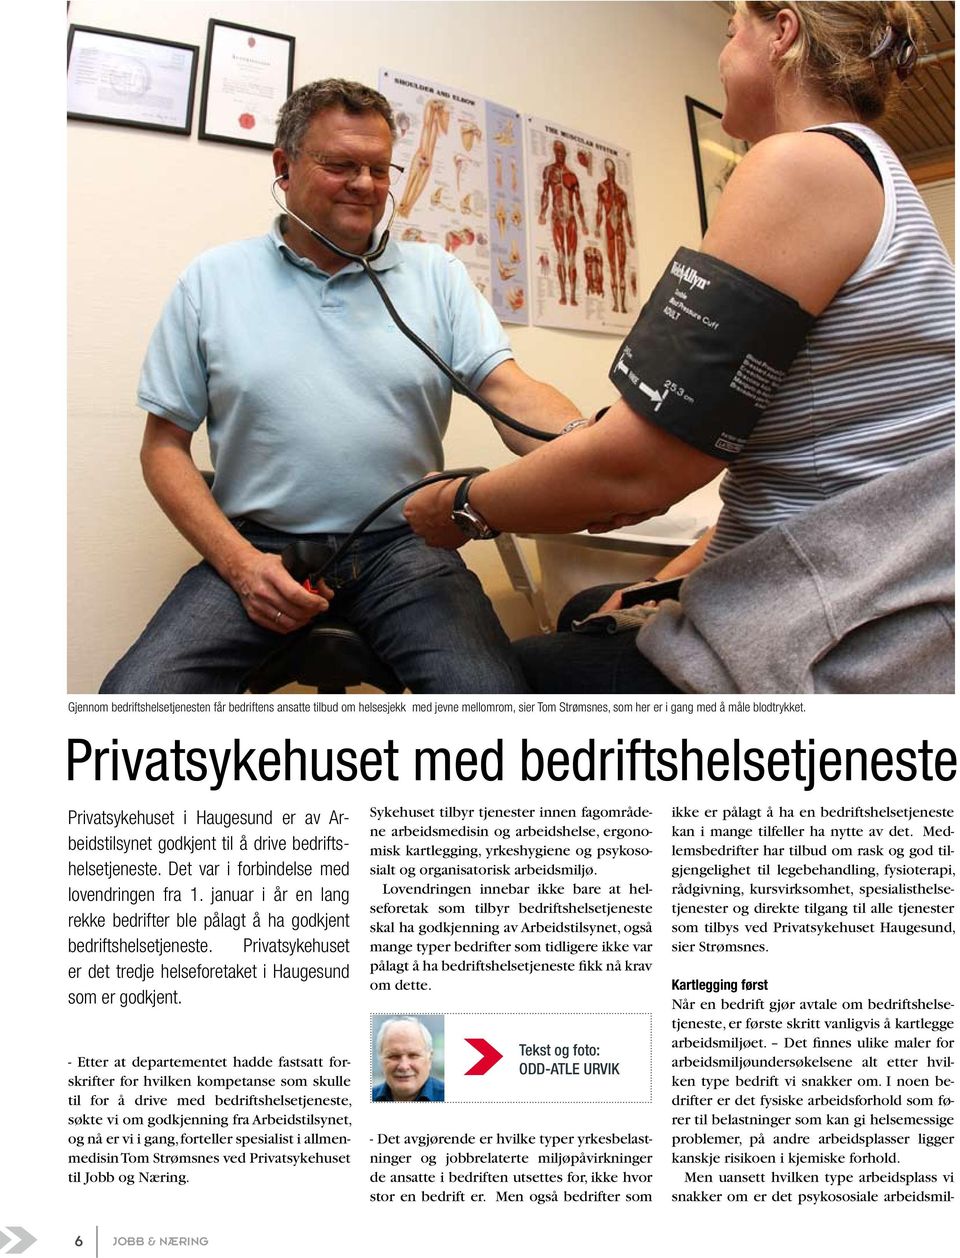 januar i år en lang rekke bedrifter ble pålagt å ha godkjent bedriftshelsetjeneste. Privatsykehuset er det tredje helseforetaket i Haugesund som er godkjent.